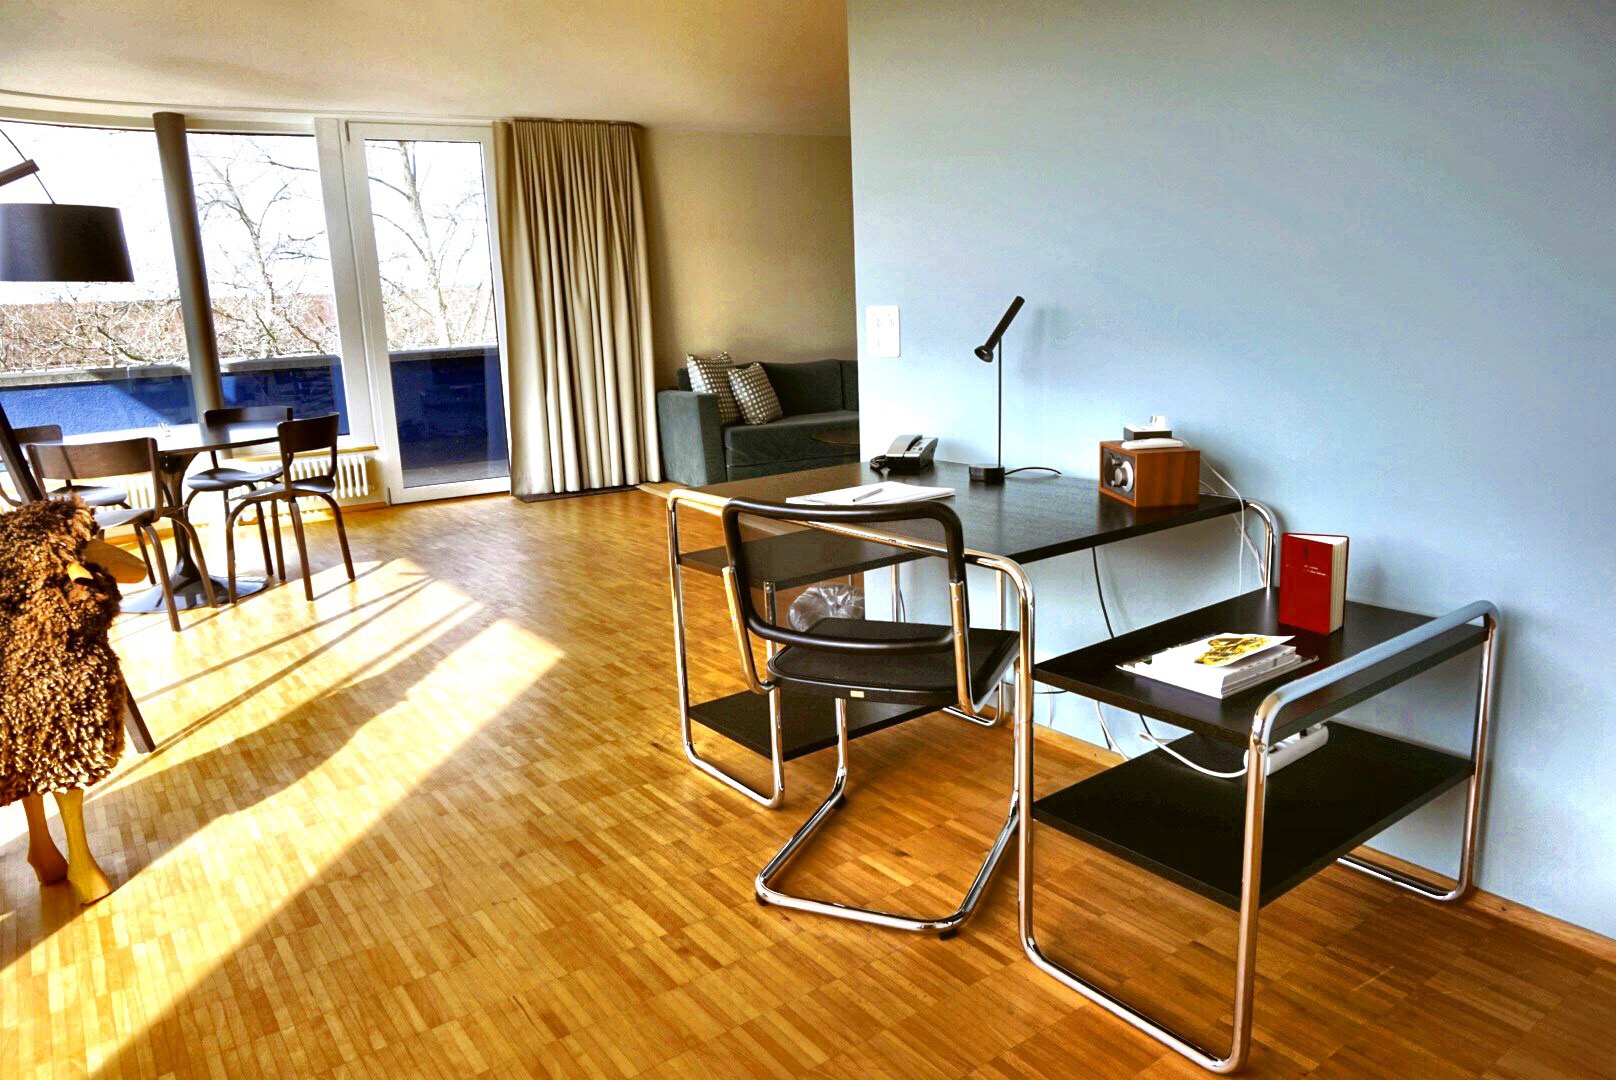 Greulich Design & Lifestyle Hotel, Zürich, Zurich, Switzerland, Schweiz